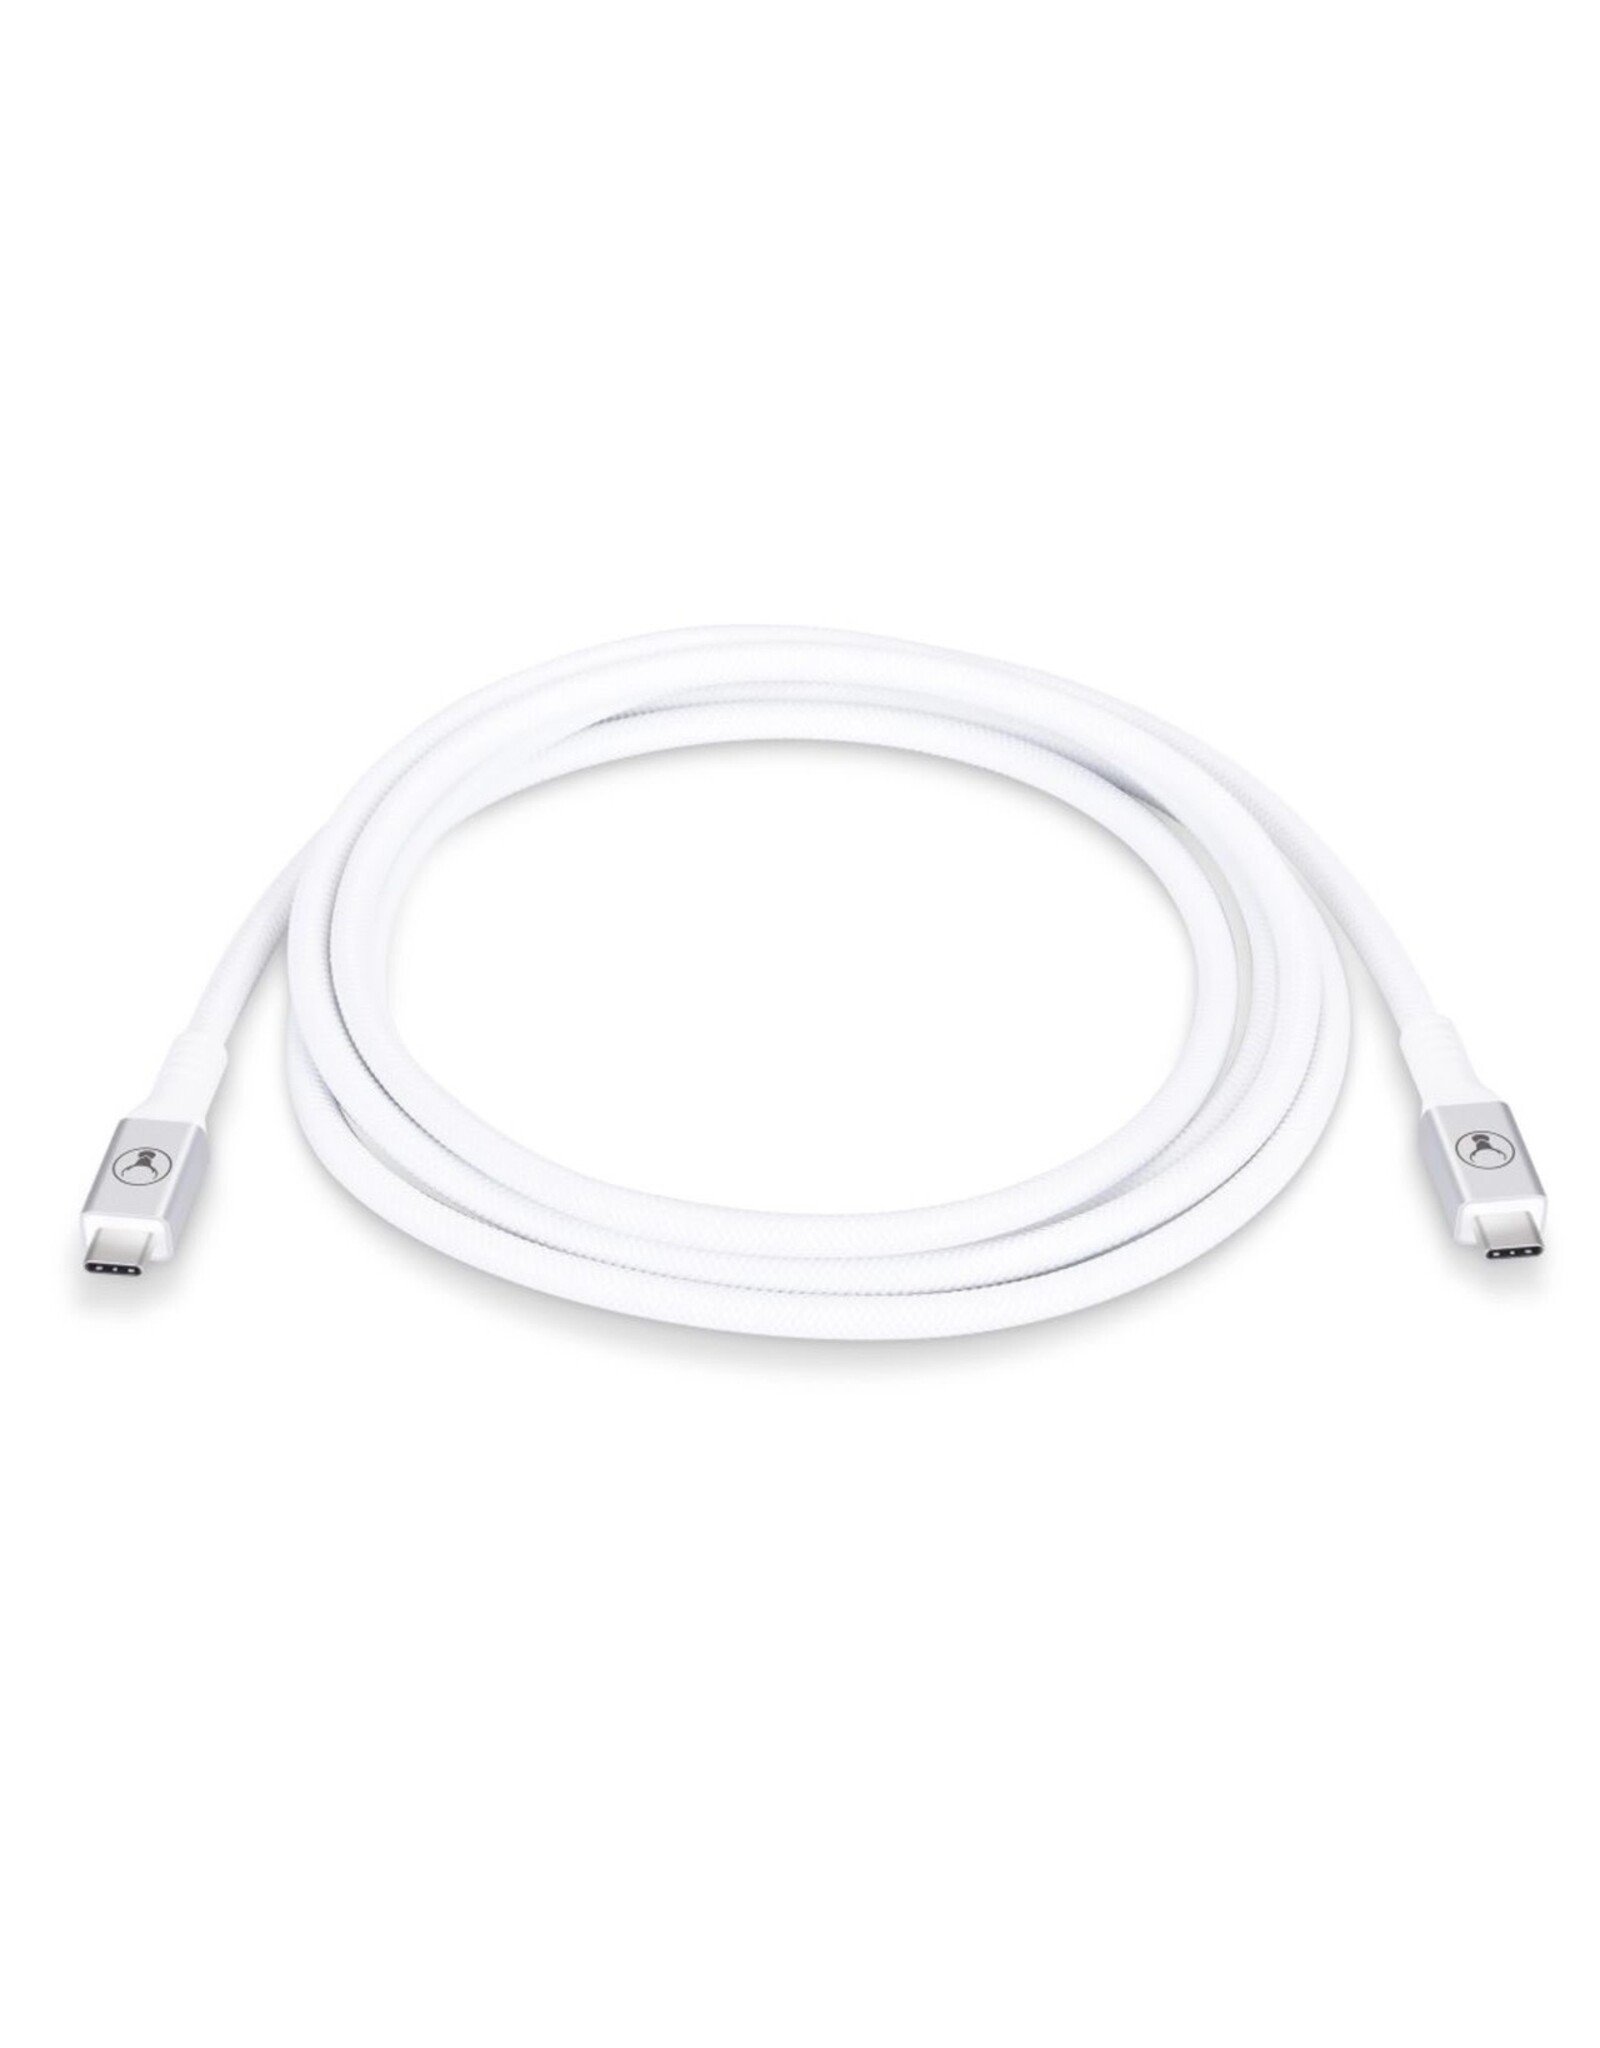 Bon.elk Bon.elk Long-Life USB-C To USB-C Cable 20Gbps /240W - 2 Metre (White)